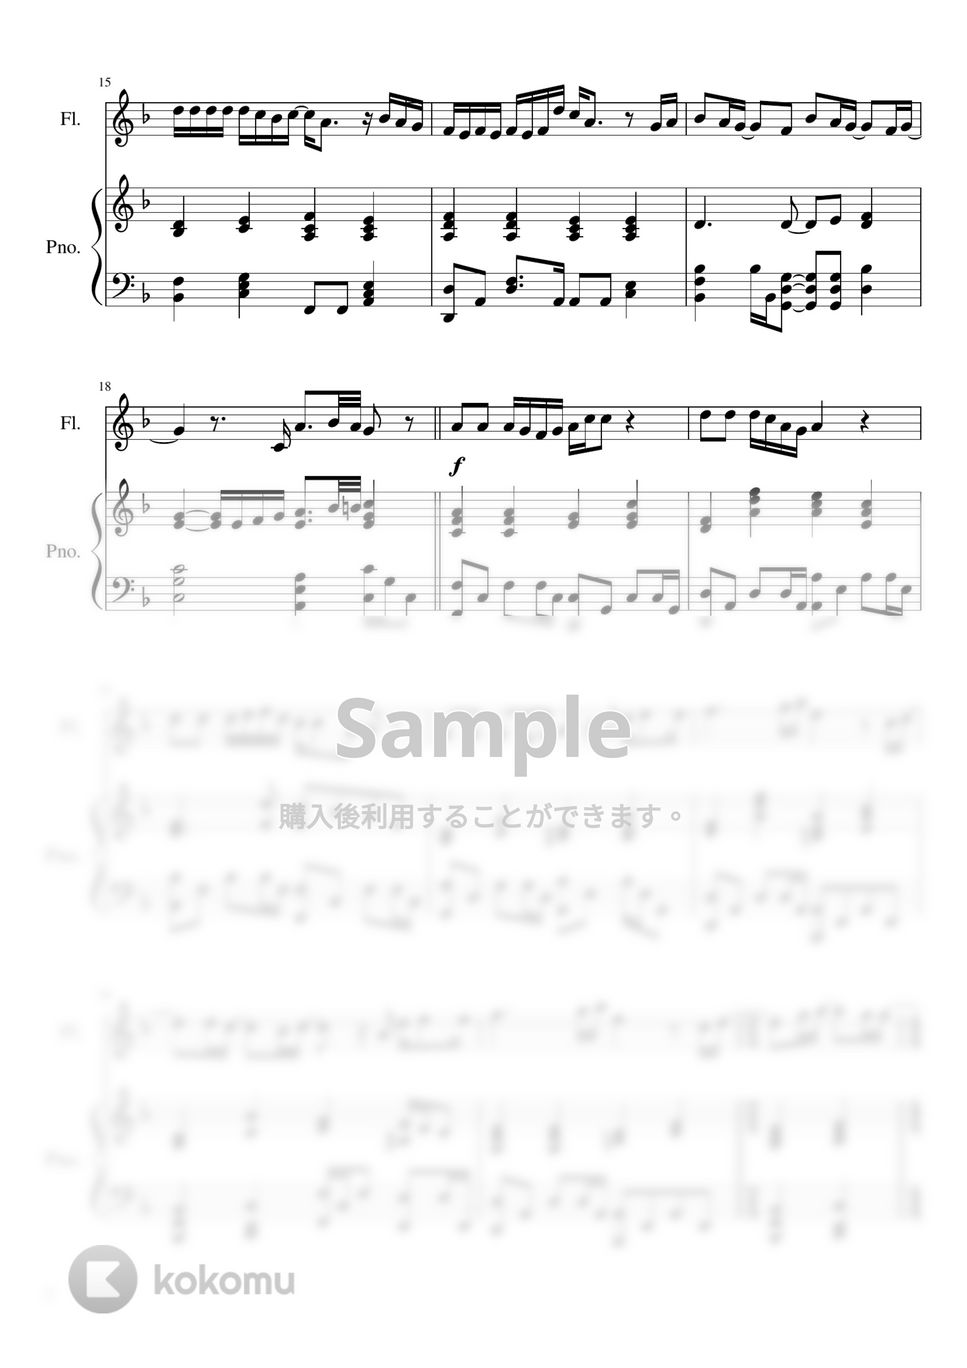 菅田将暉 - 虹【フルート&ピアノ】映画『 STAND BY ME ドラえもん2 』主題歌 (フルート&ピアノ) by PiaFlu